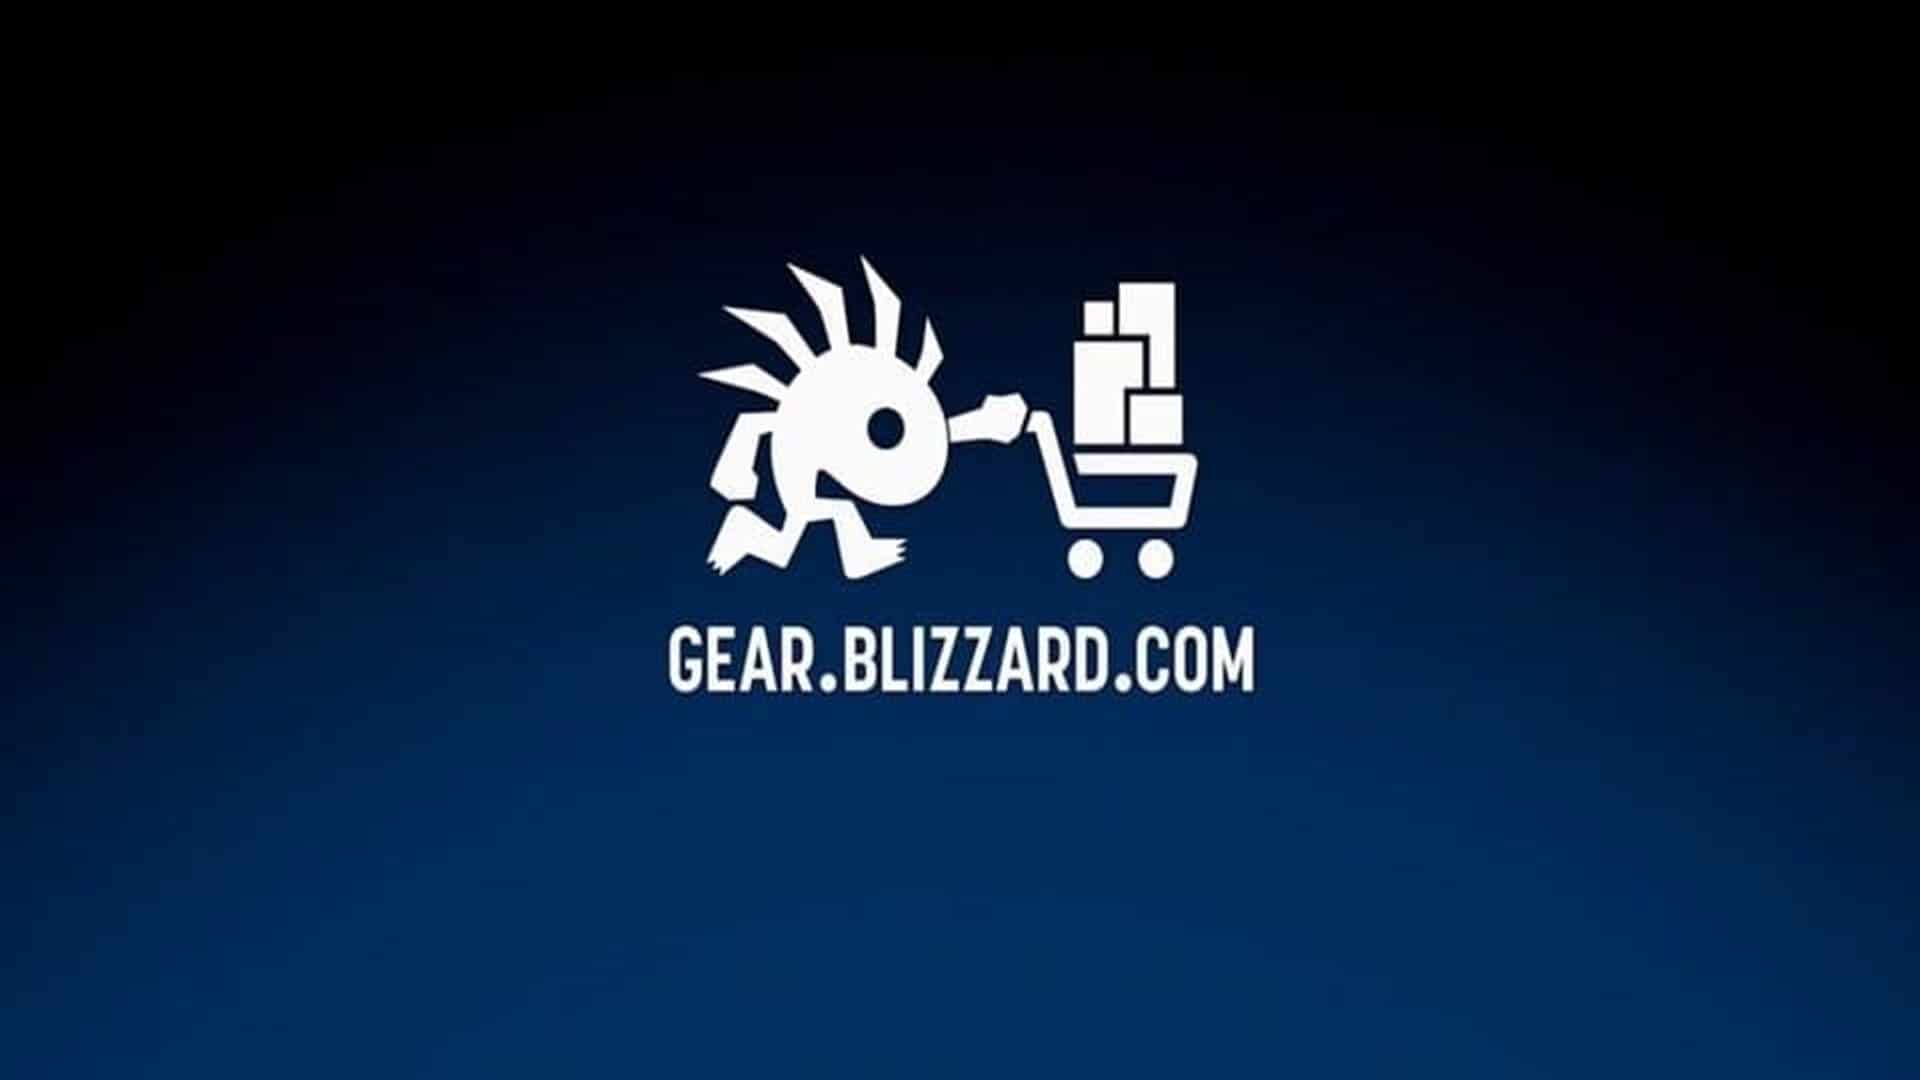 Algunos fanáticos de Blizzard piensan que el relanzamiento de la tienda en línea podría incluir NFT, GamersRD